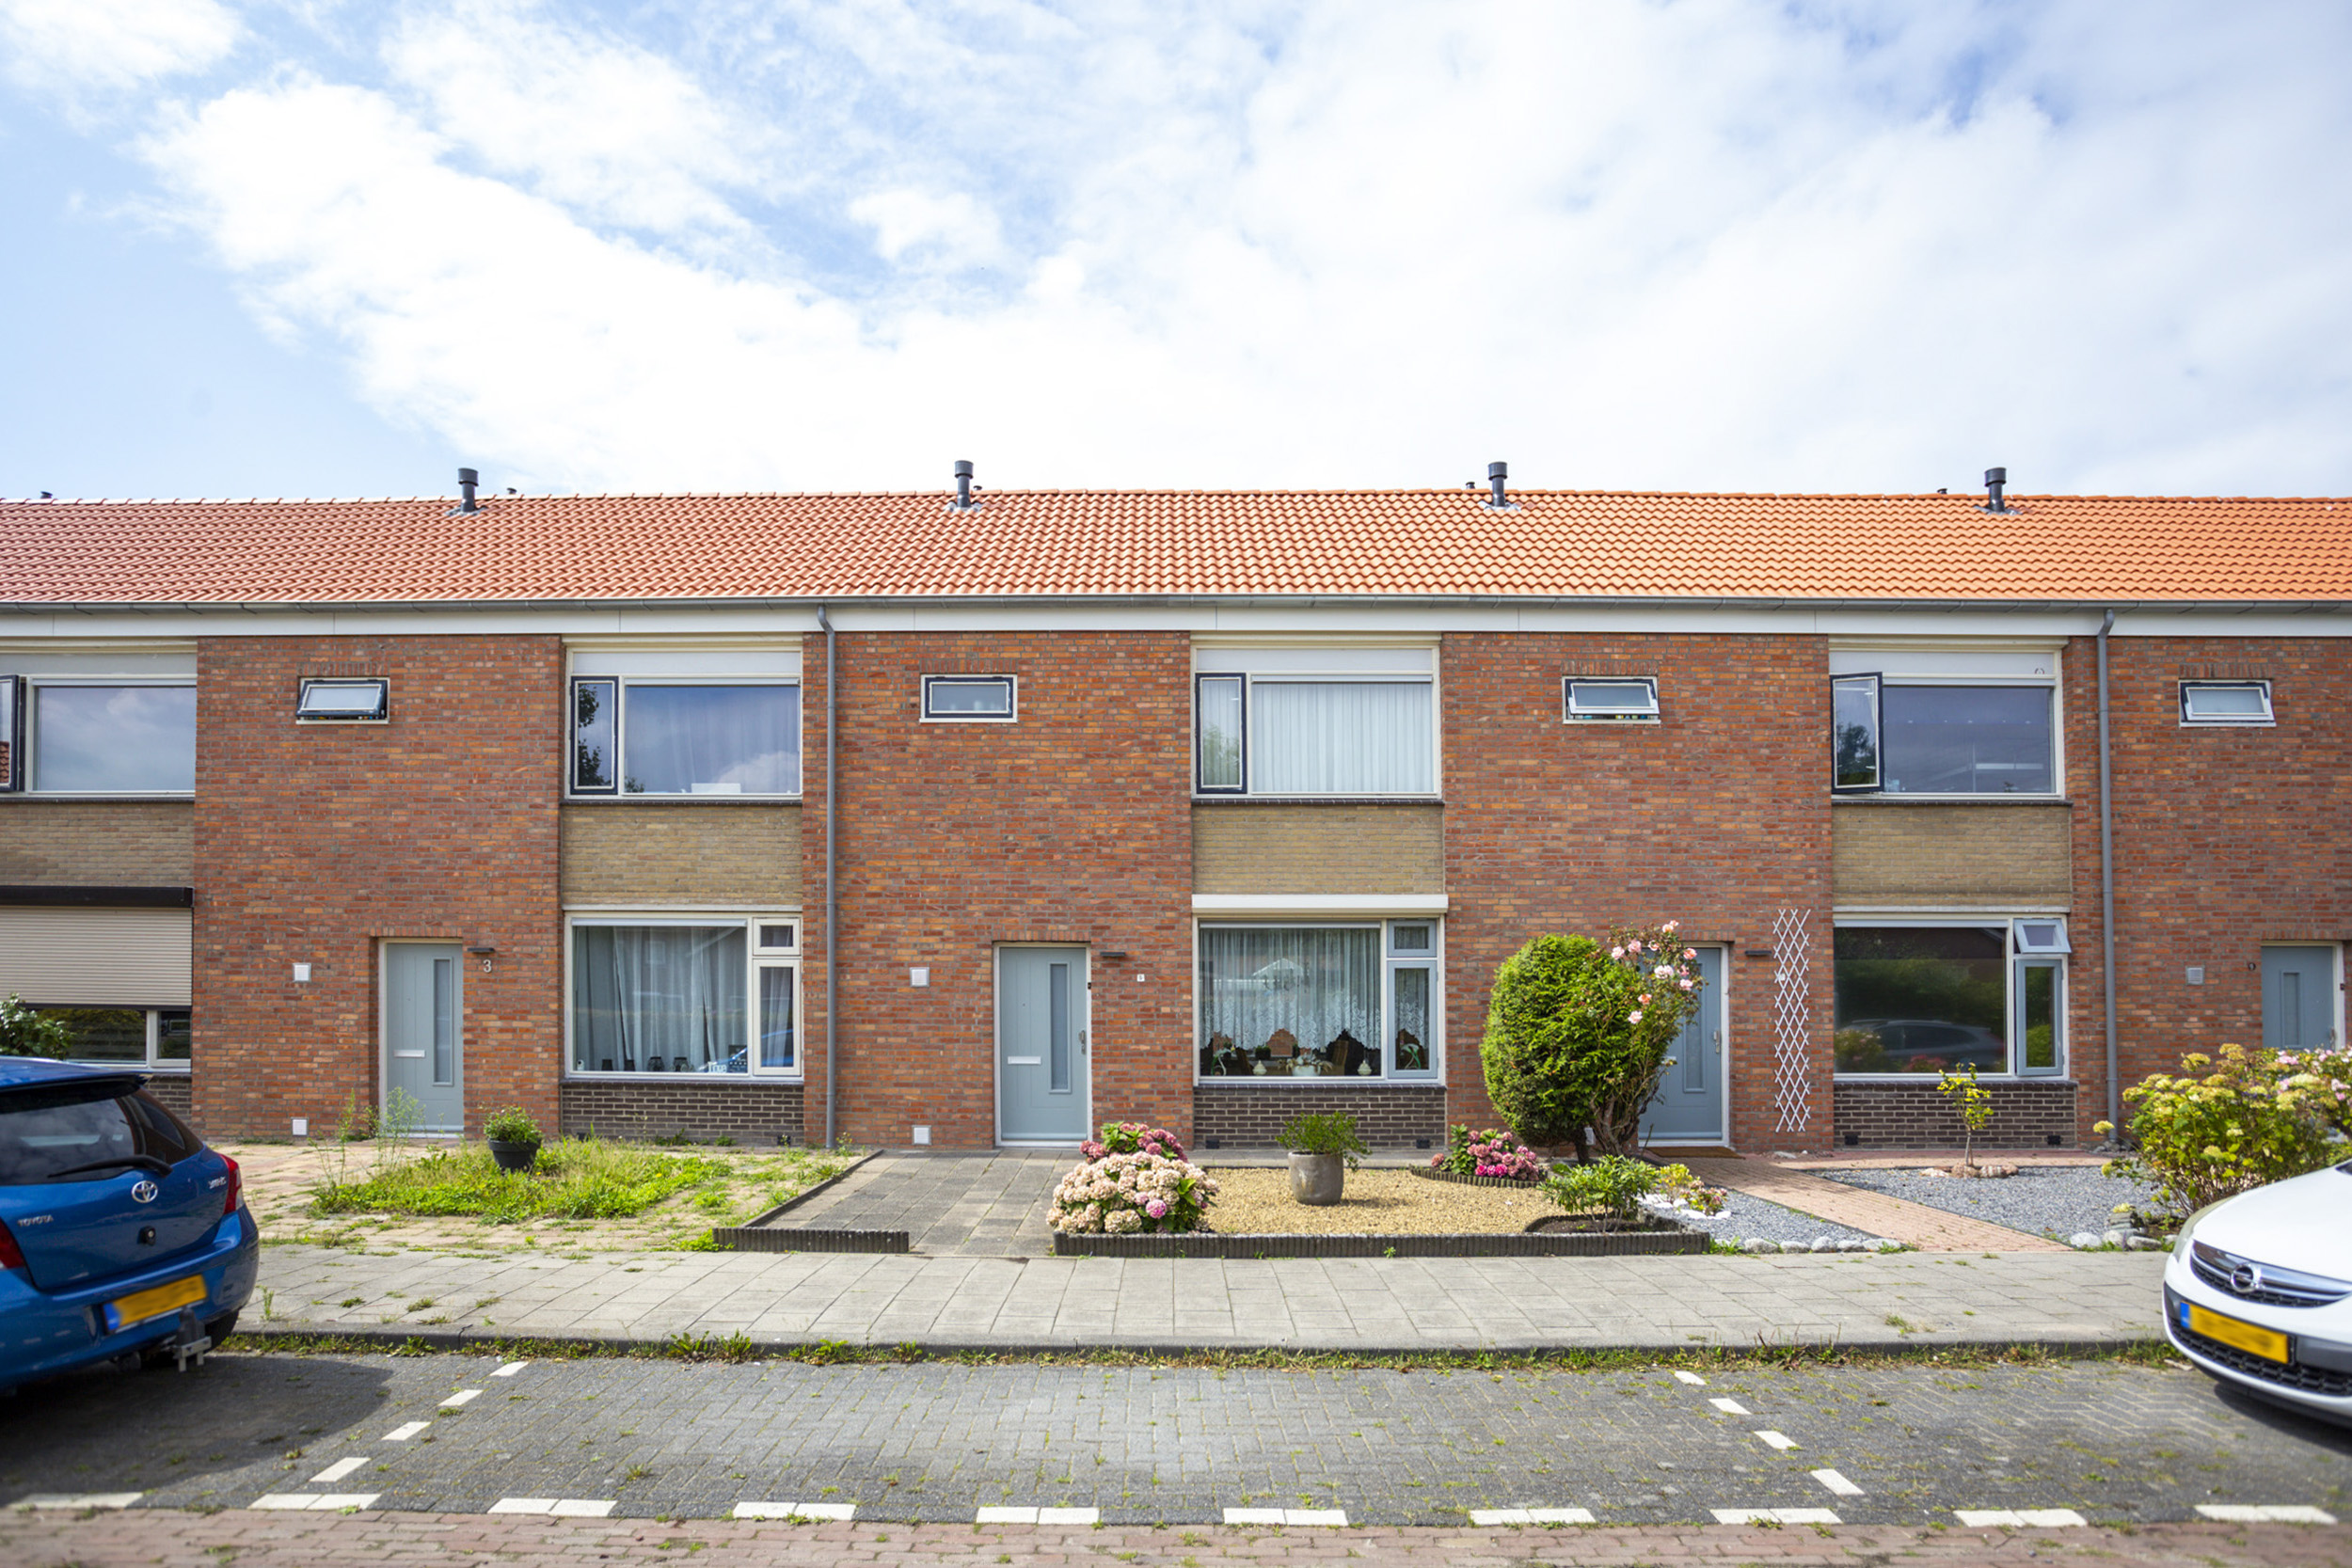 Van Mansfeldstraat 5, 4761 JS Zevenbergen, Nederland